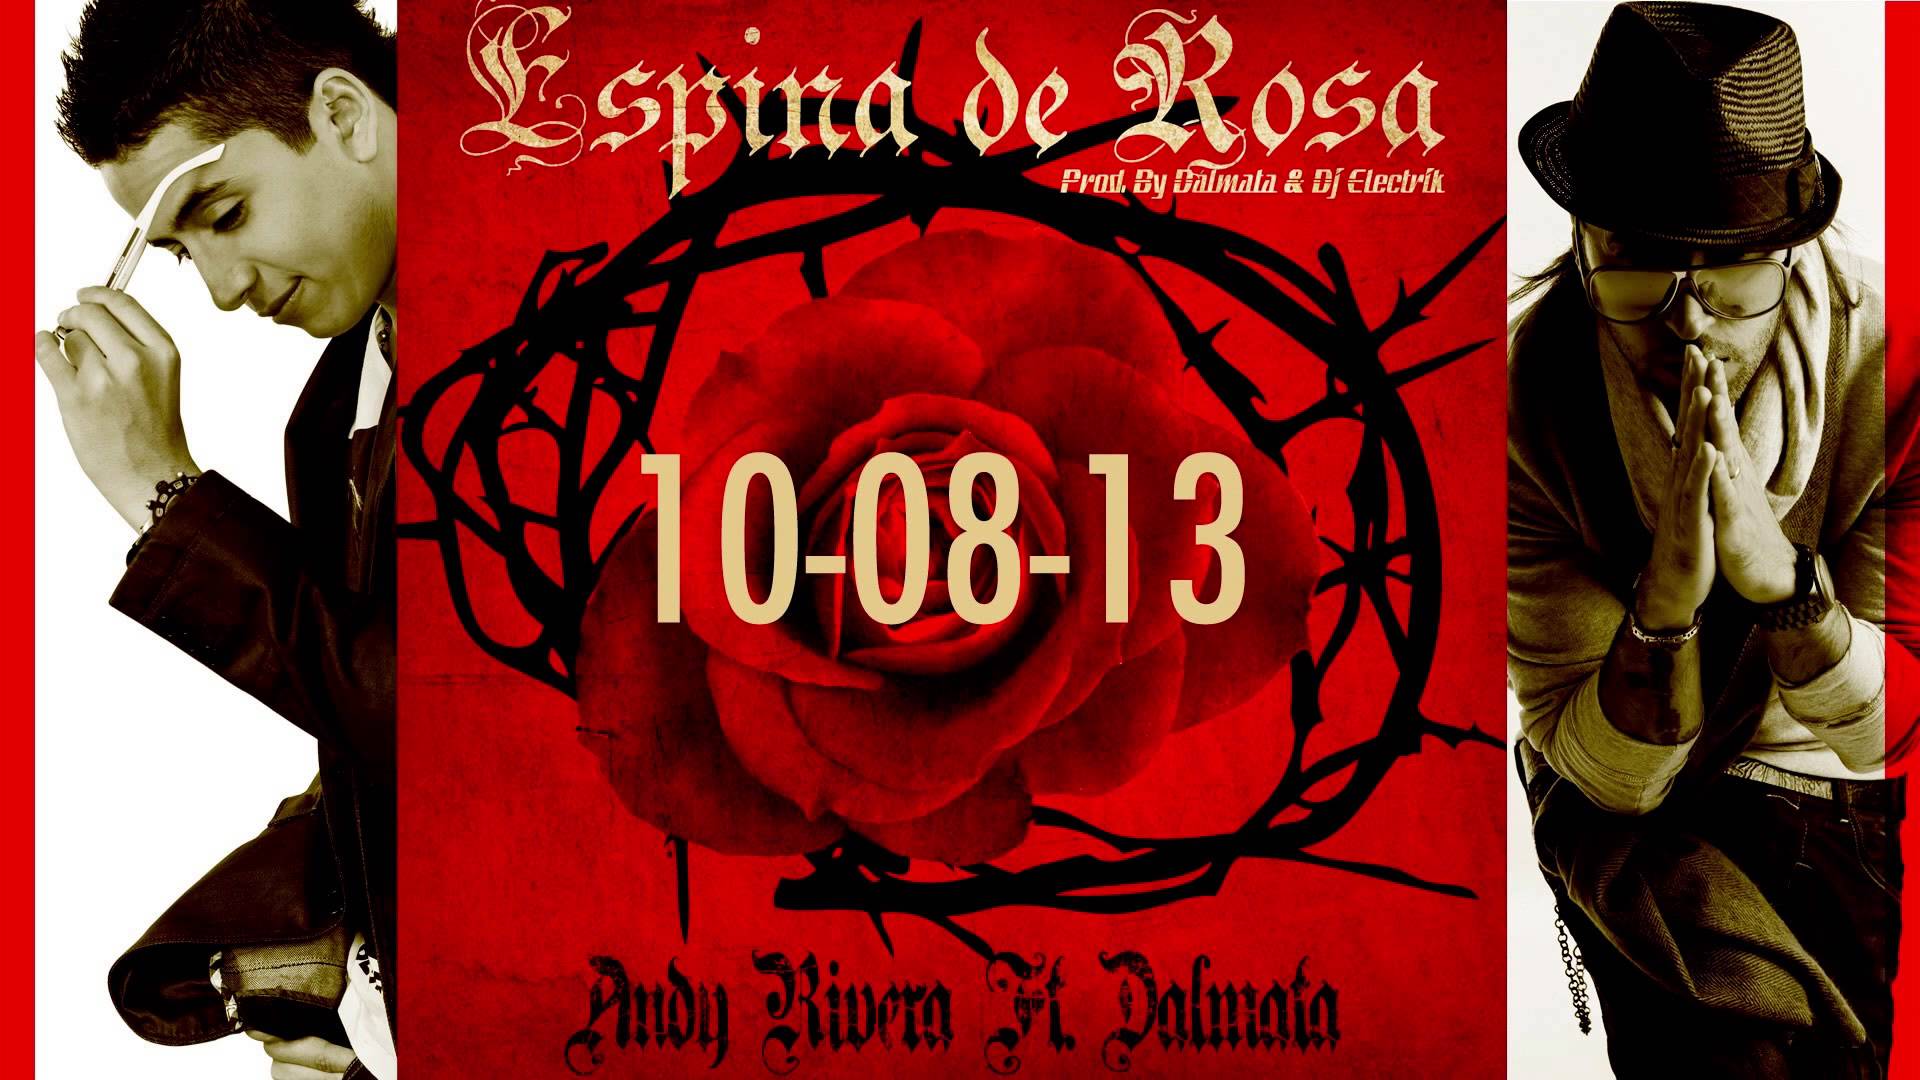 Espina de Rosa - Andy Rivera Ft Dalmata